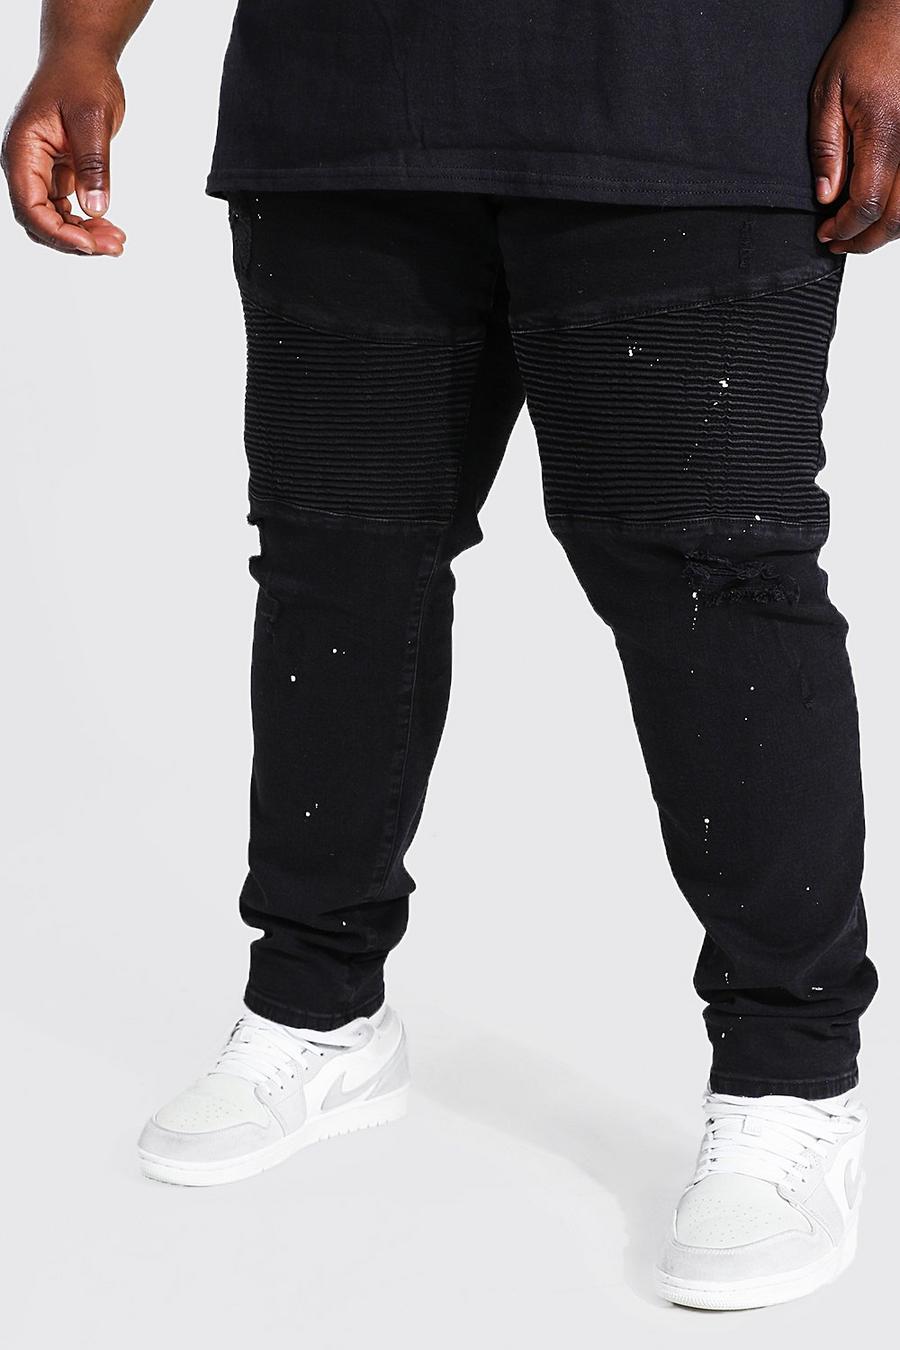 שחור דהוי סקיני ג'ינס אופנוענים עם כתמי התזת צבע, מידות גדולות image number 1